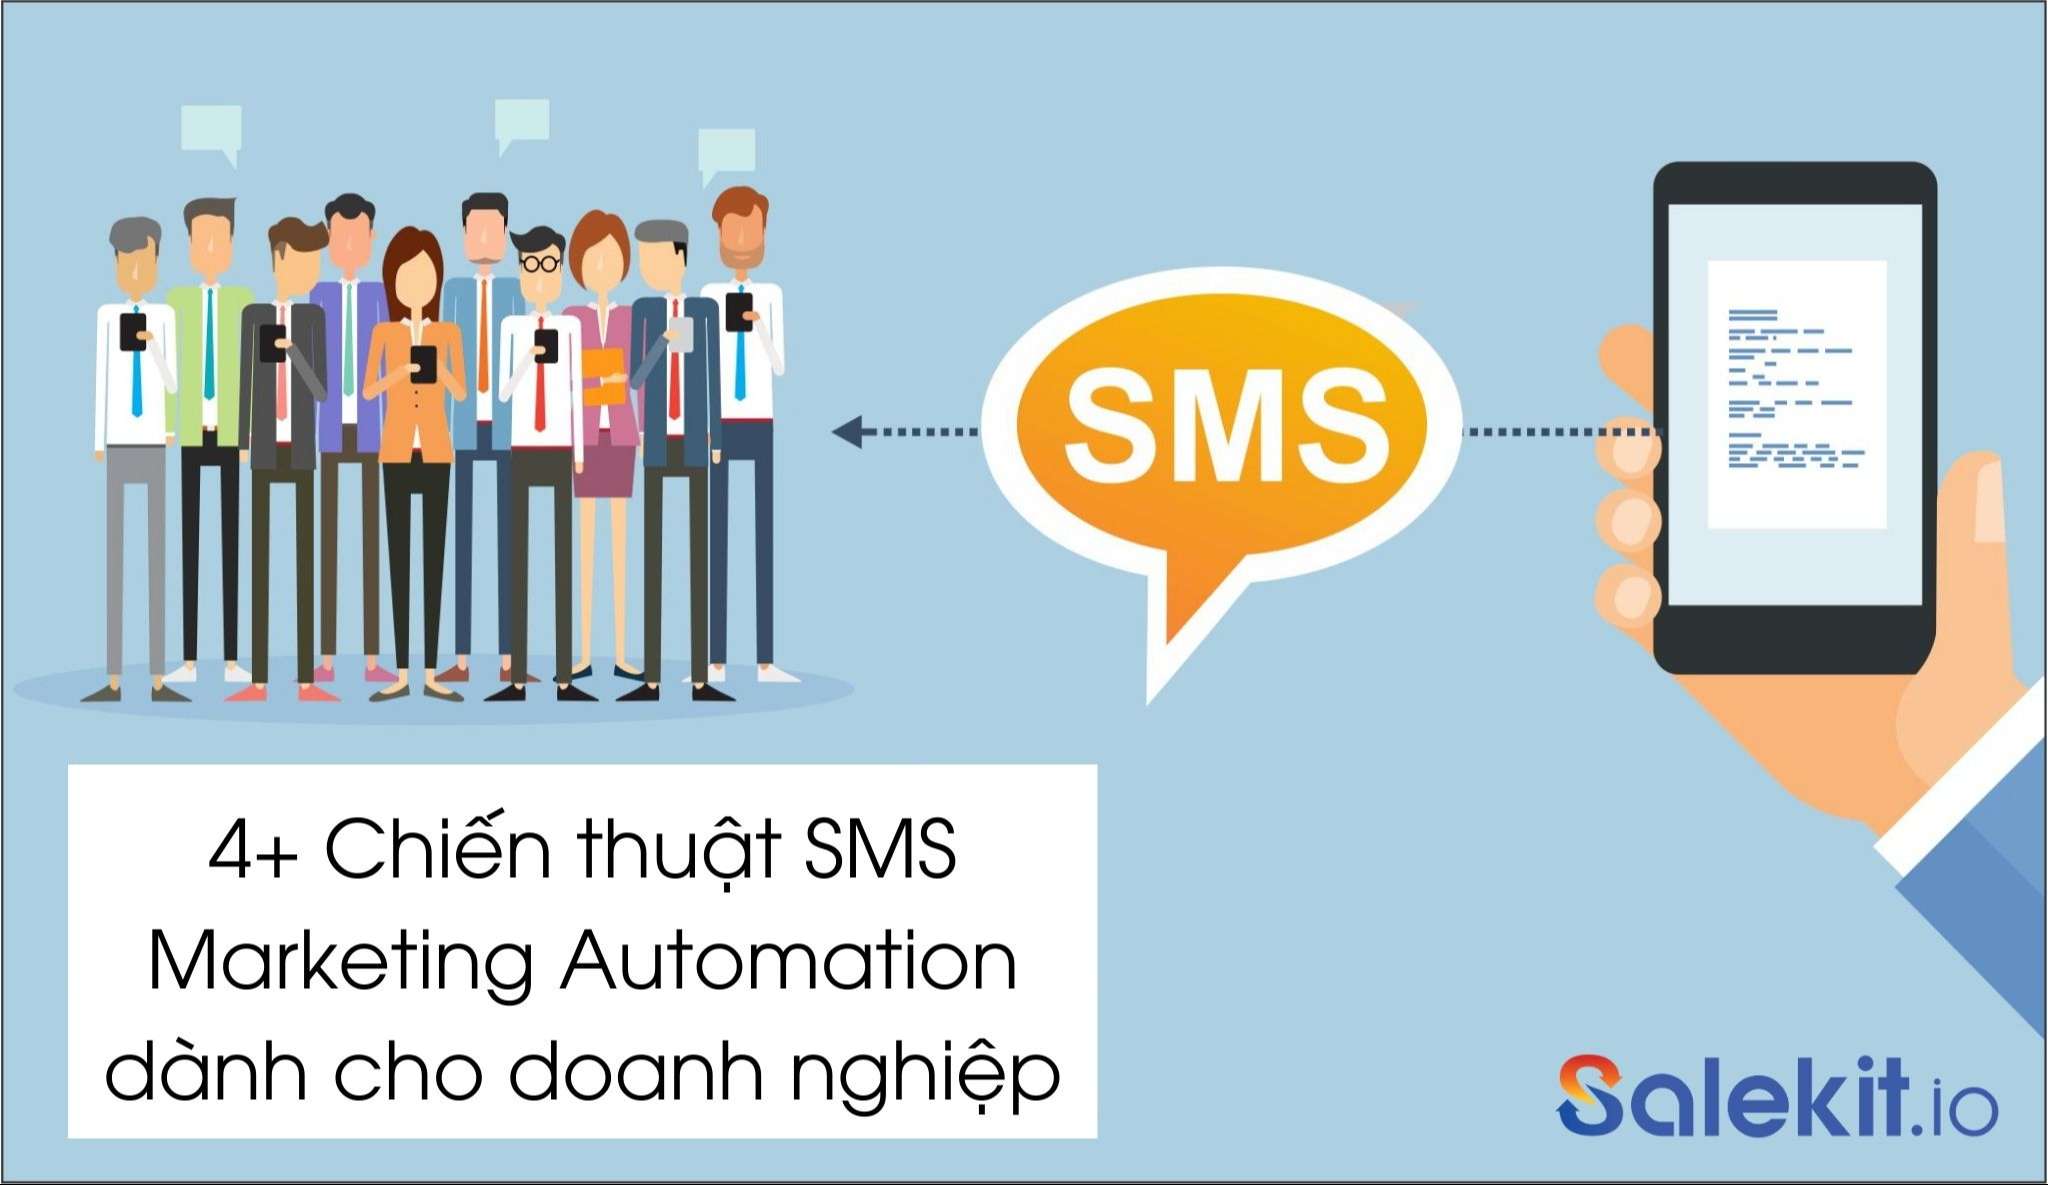 4+ Chiến thuật SMS Marketing Automation dành cho Doanh nghiệp